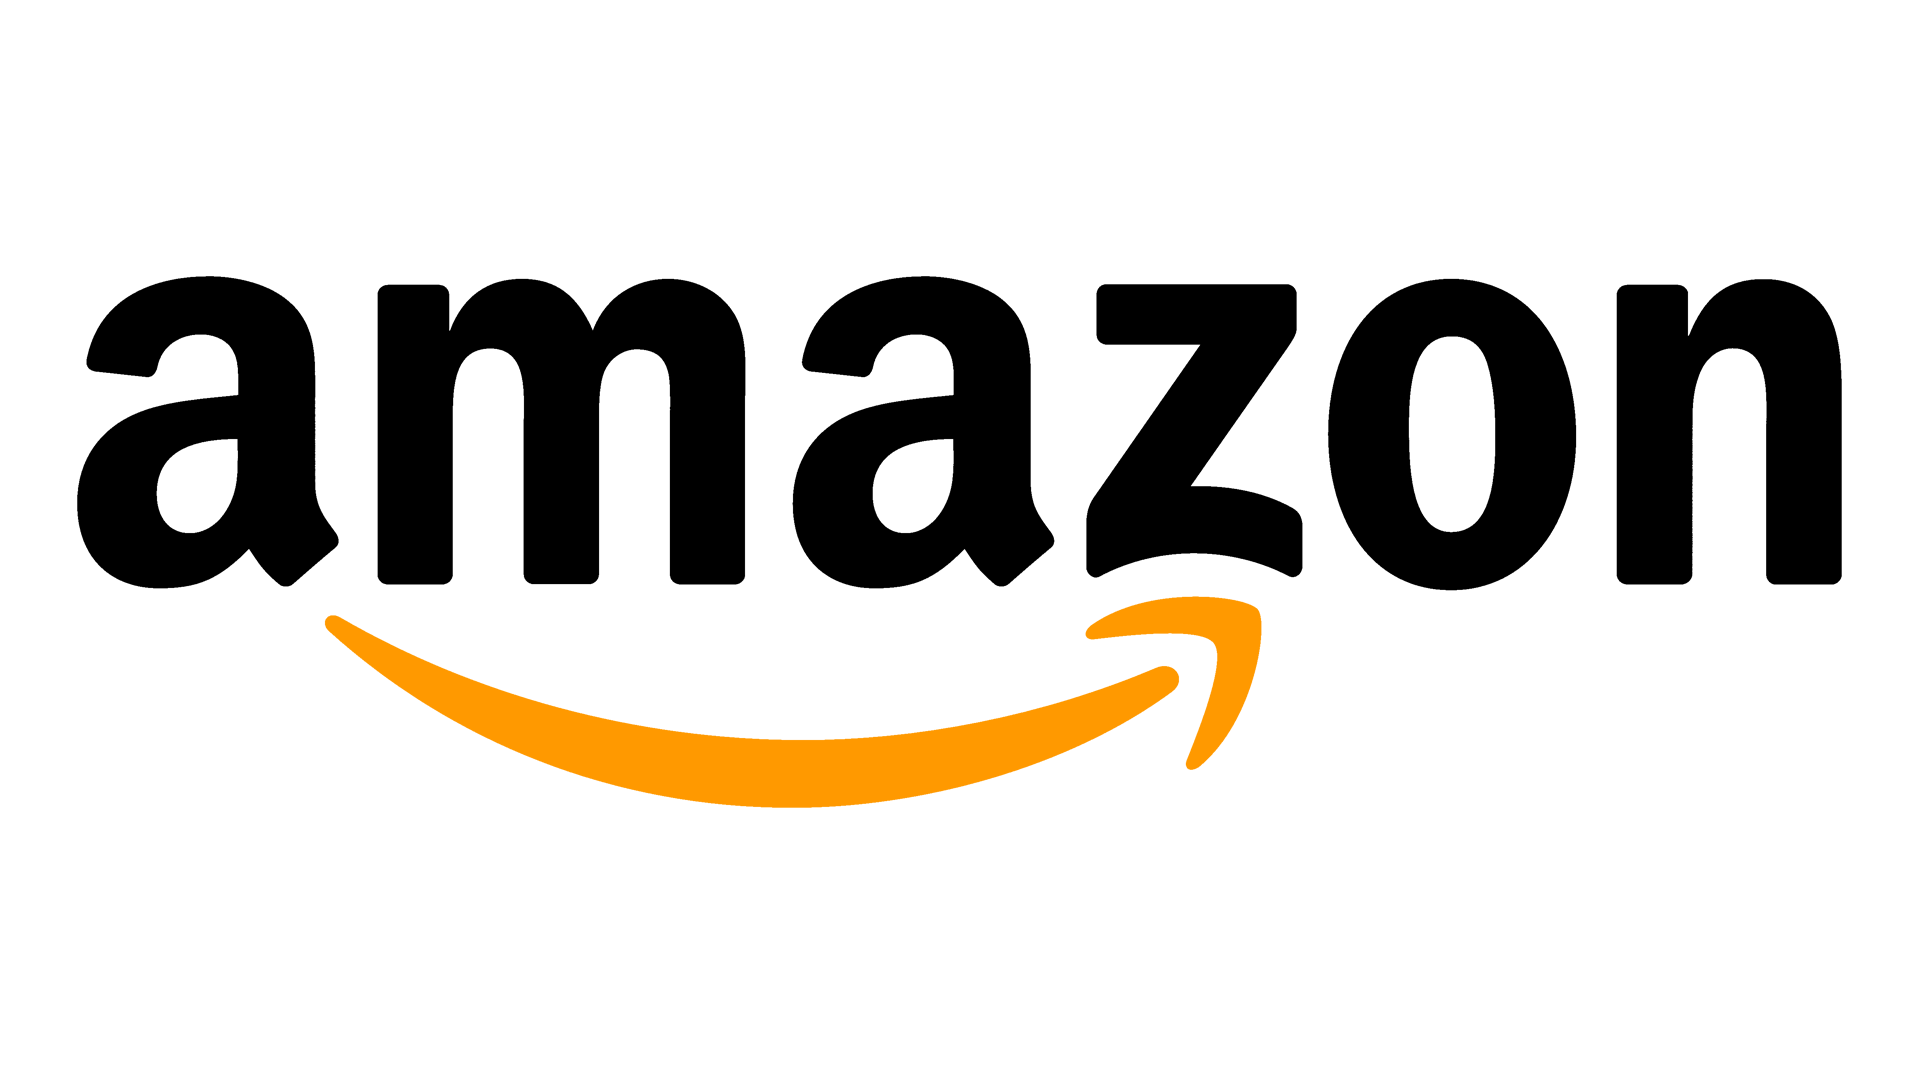 Le logo d'Amazon souhaite exprimer la satisfaction client par la forme en sourire de sa flèche, mais également expliquer la profusion des articles sur le site en liant le A et le Z